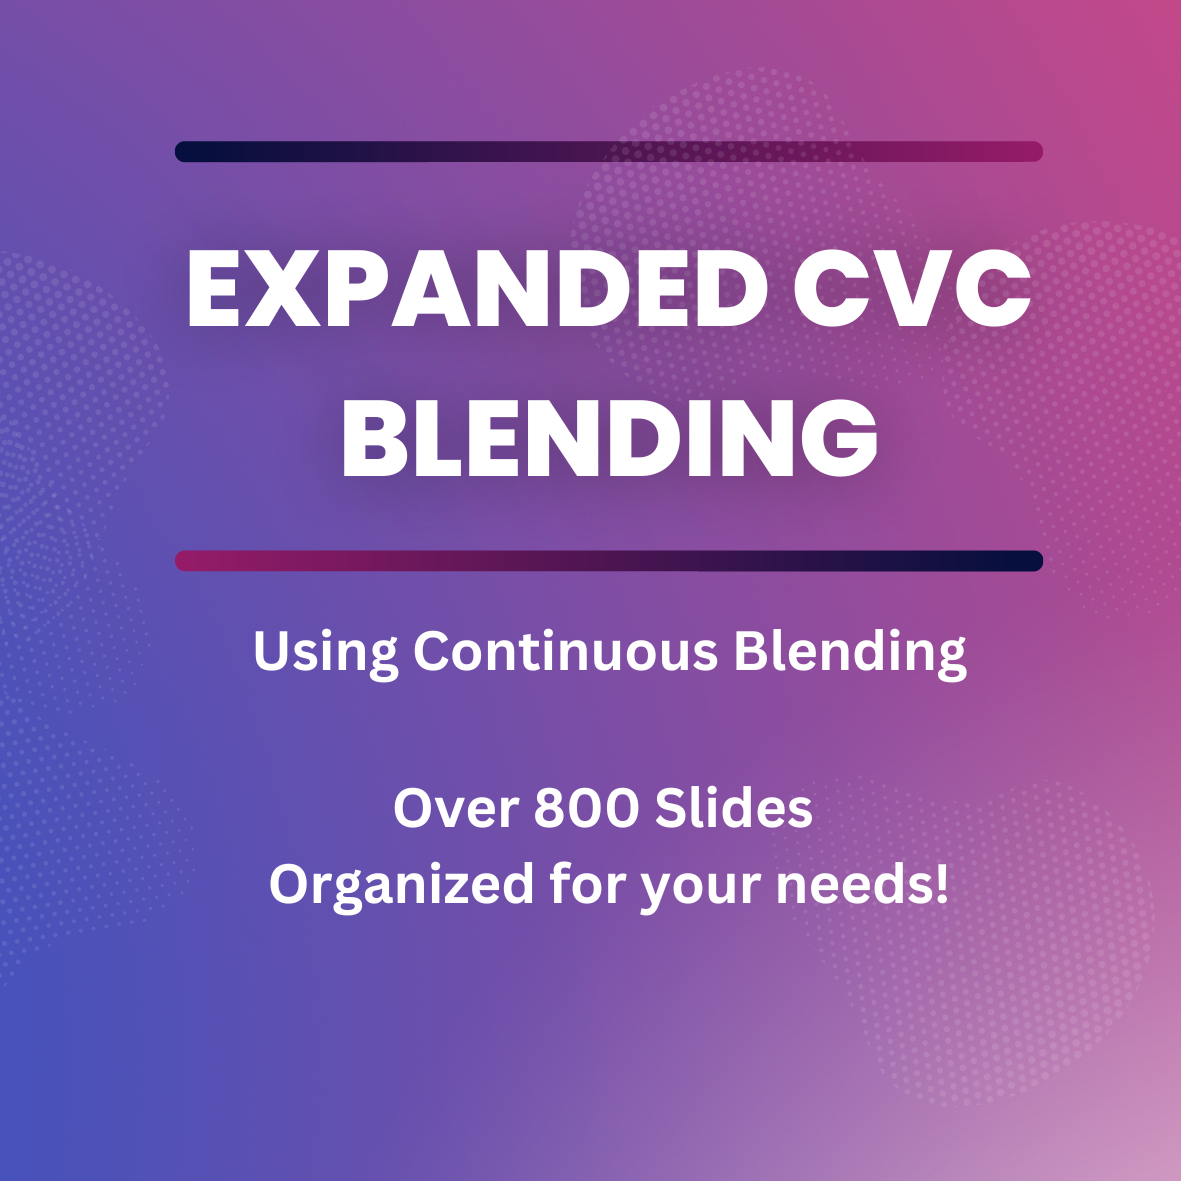 Expanded CVC Blending - Continuous Blending